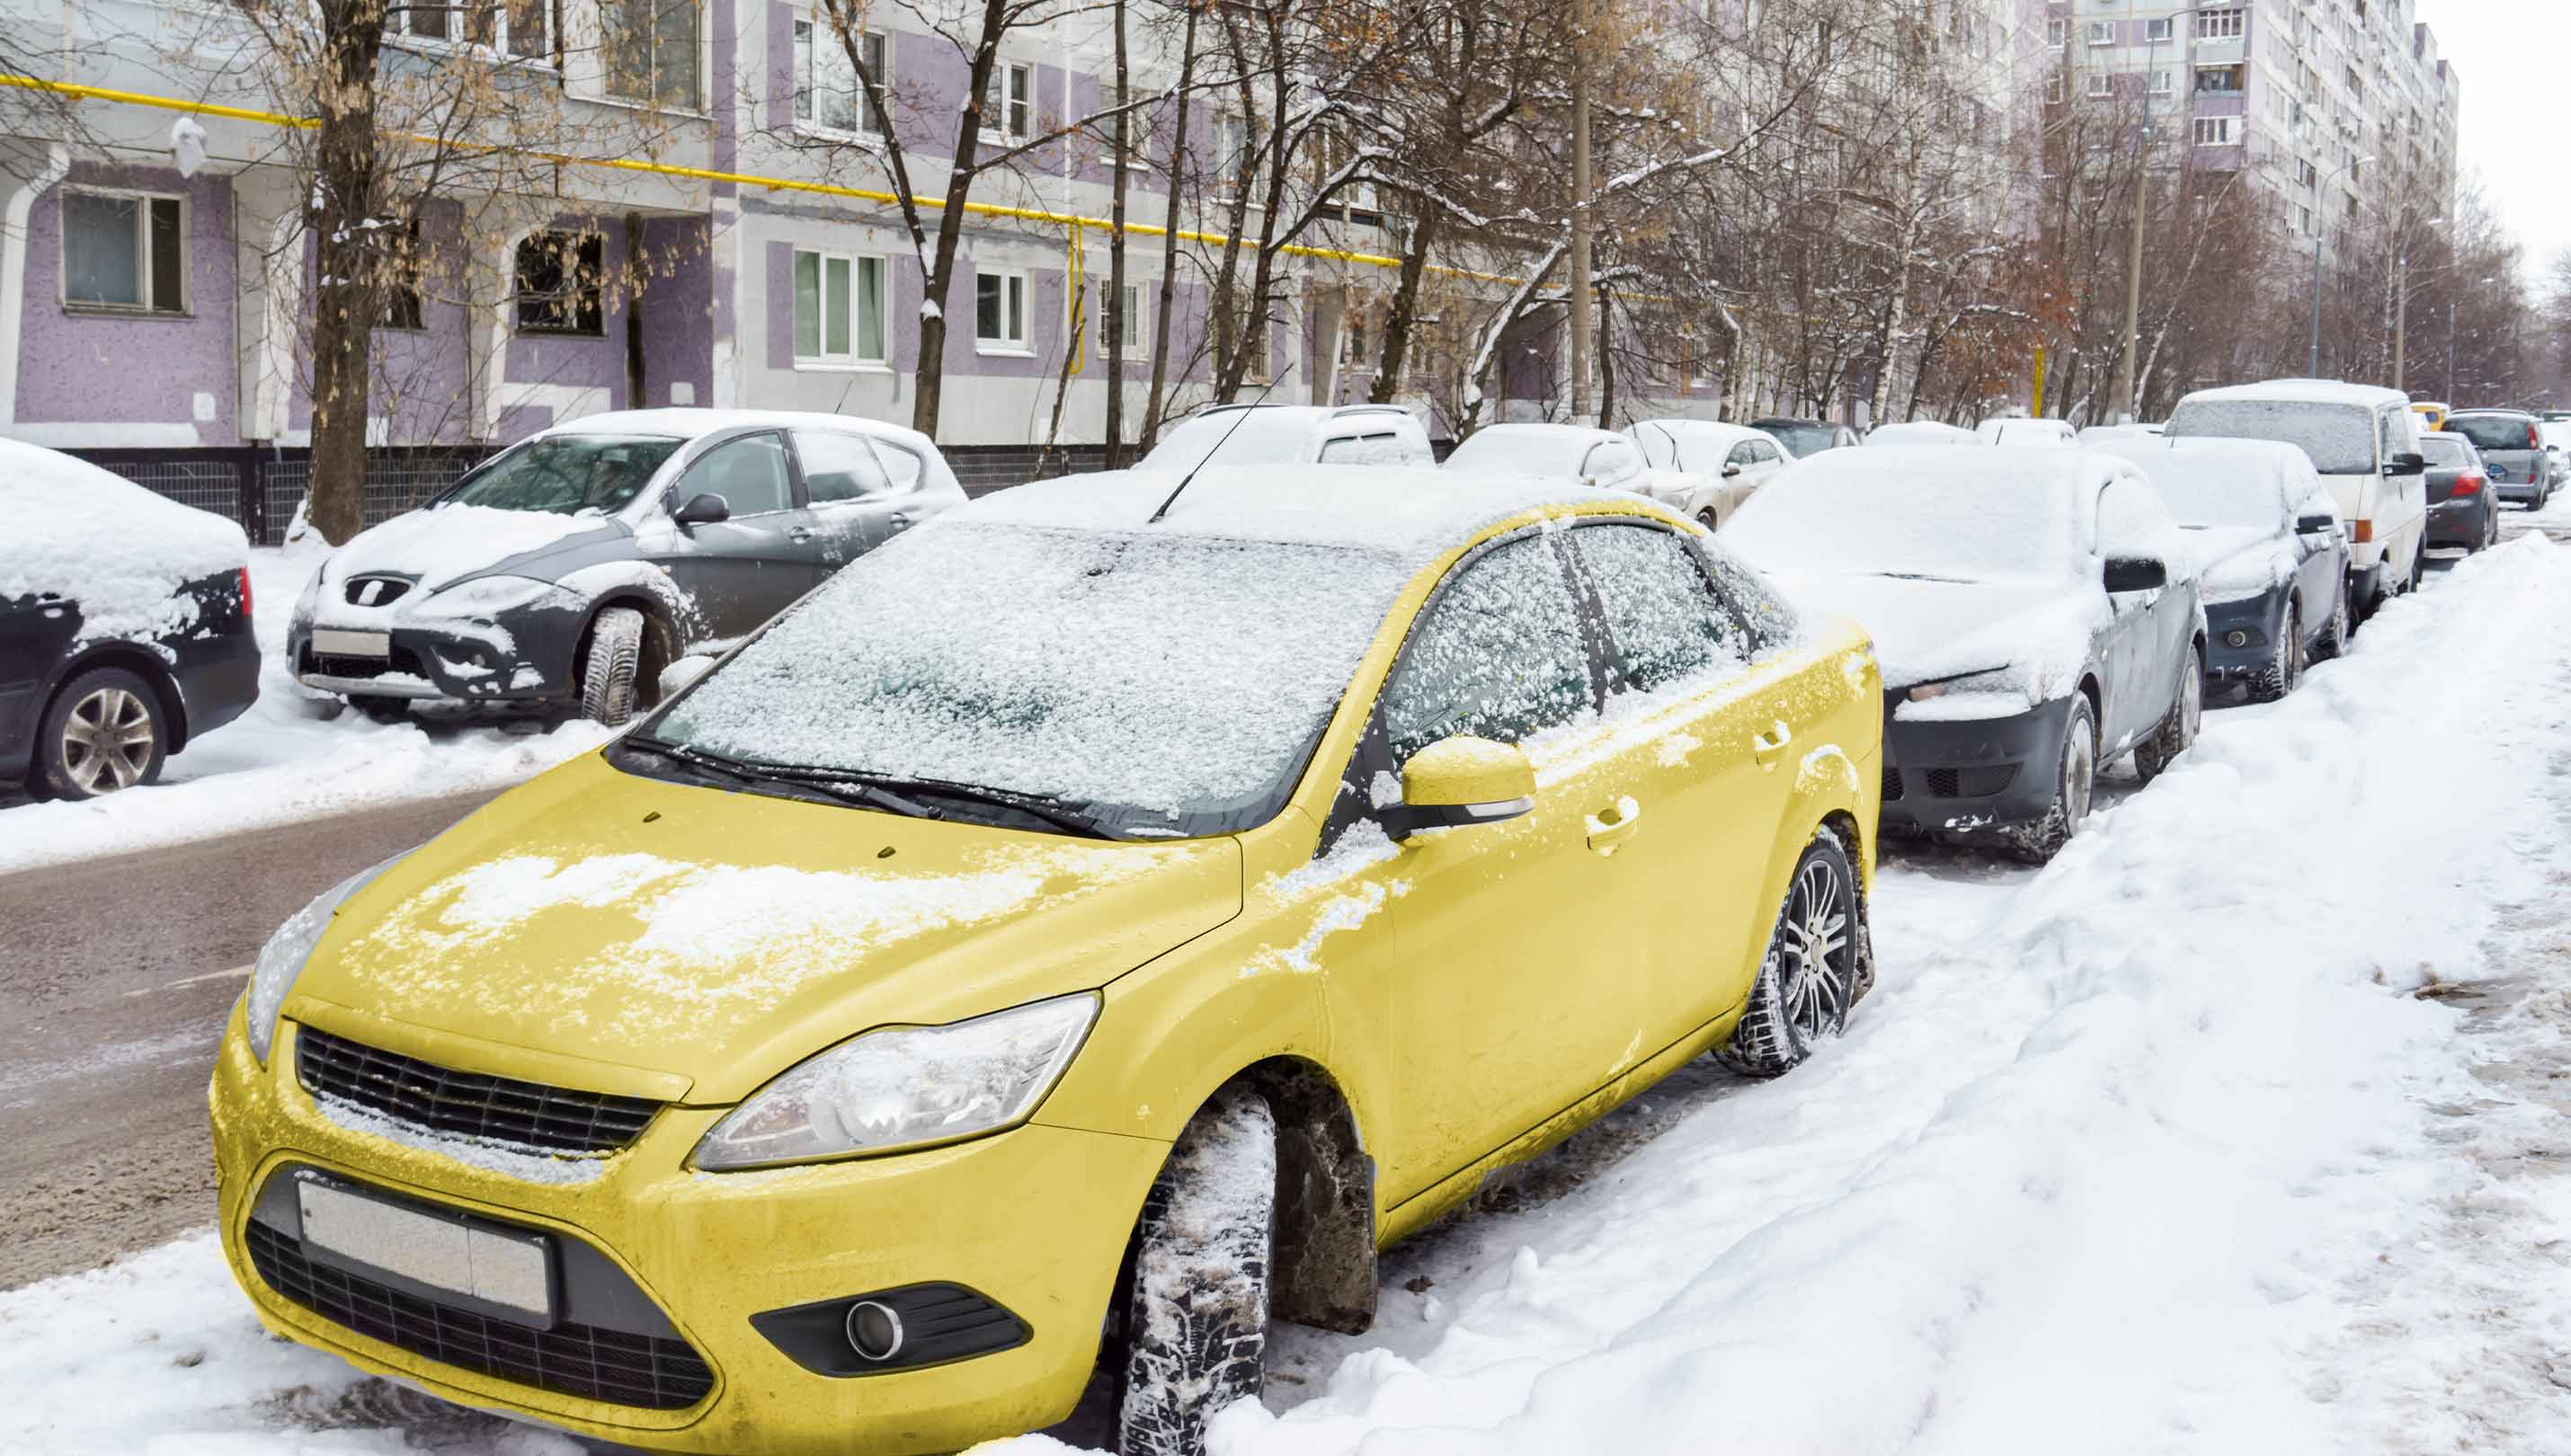 Jakie opcje ubezpieczenia samochodu przydadzą się zimą?